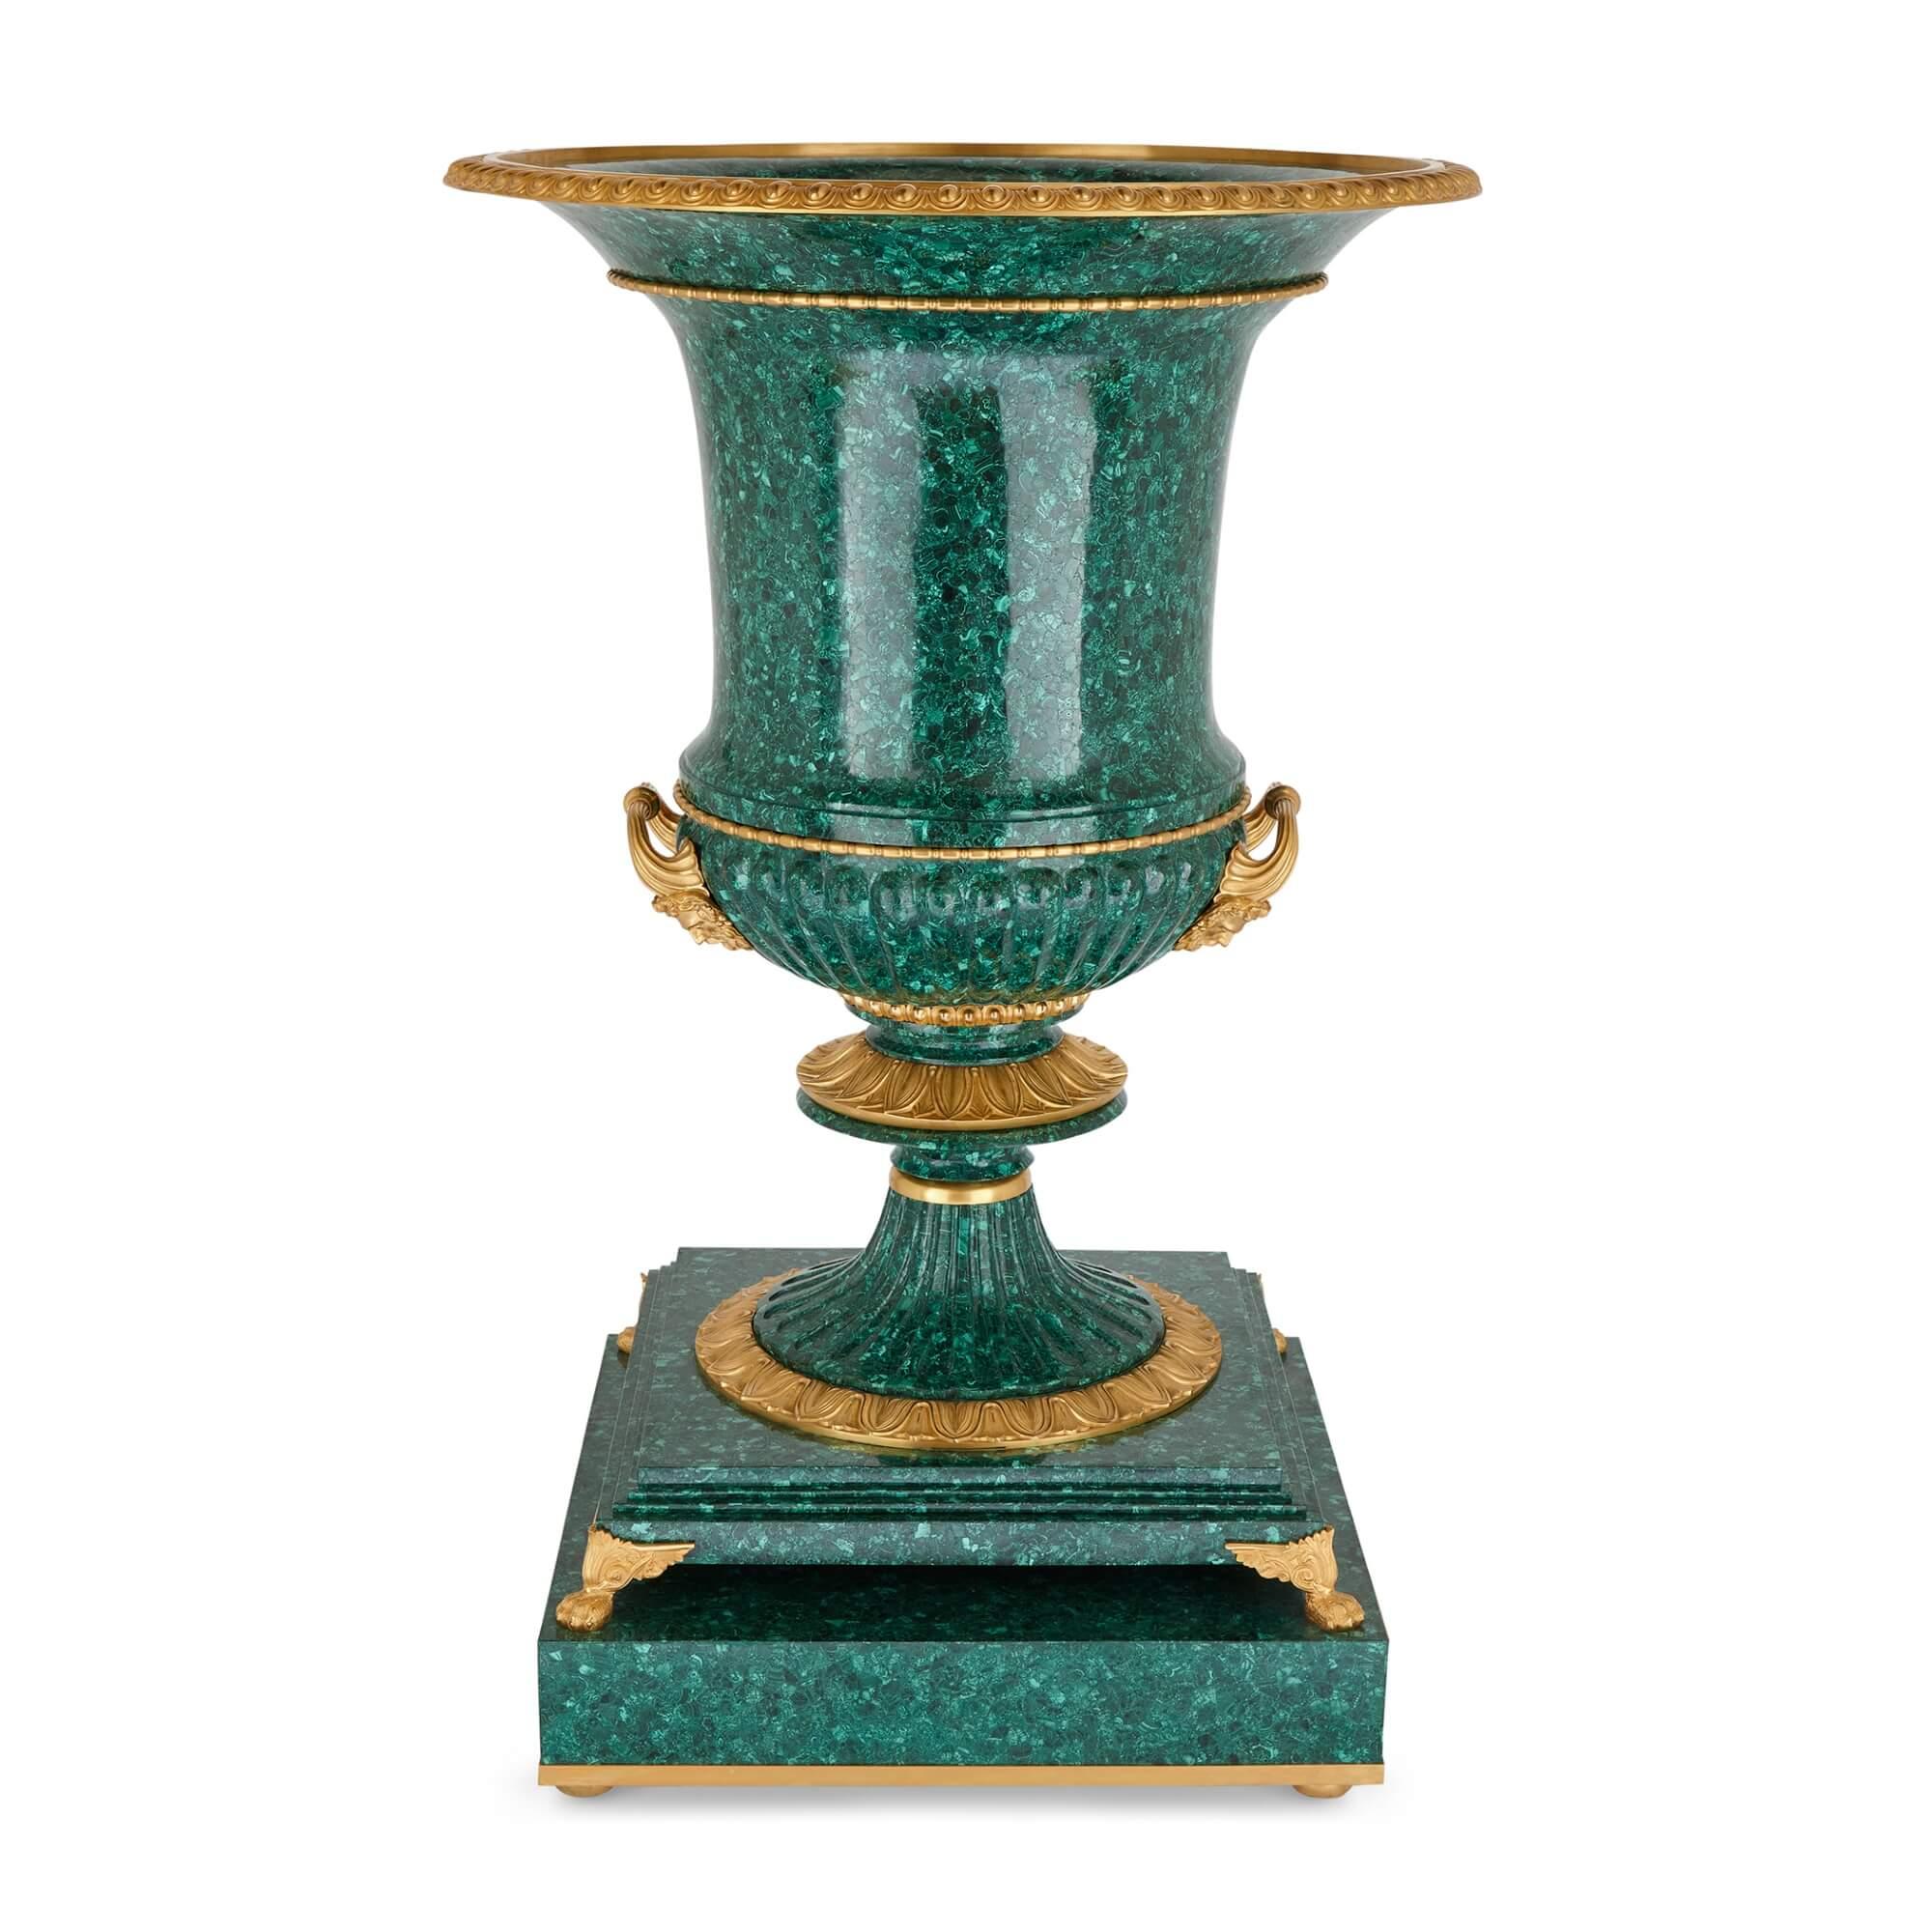 Paar sehr große Vasen aus Malachit und Ormolu 
Französisch, 20. Jahrhundert 
Höhe 140cm, Durchmesser 91cm

Die Vasen von beeindruckender Größe und Qualität sind aus leuchtend grünem Malachit und Ormolu gefertigt. Der Korpus jeder Vase in